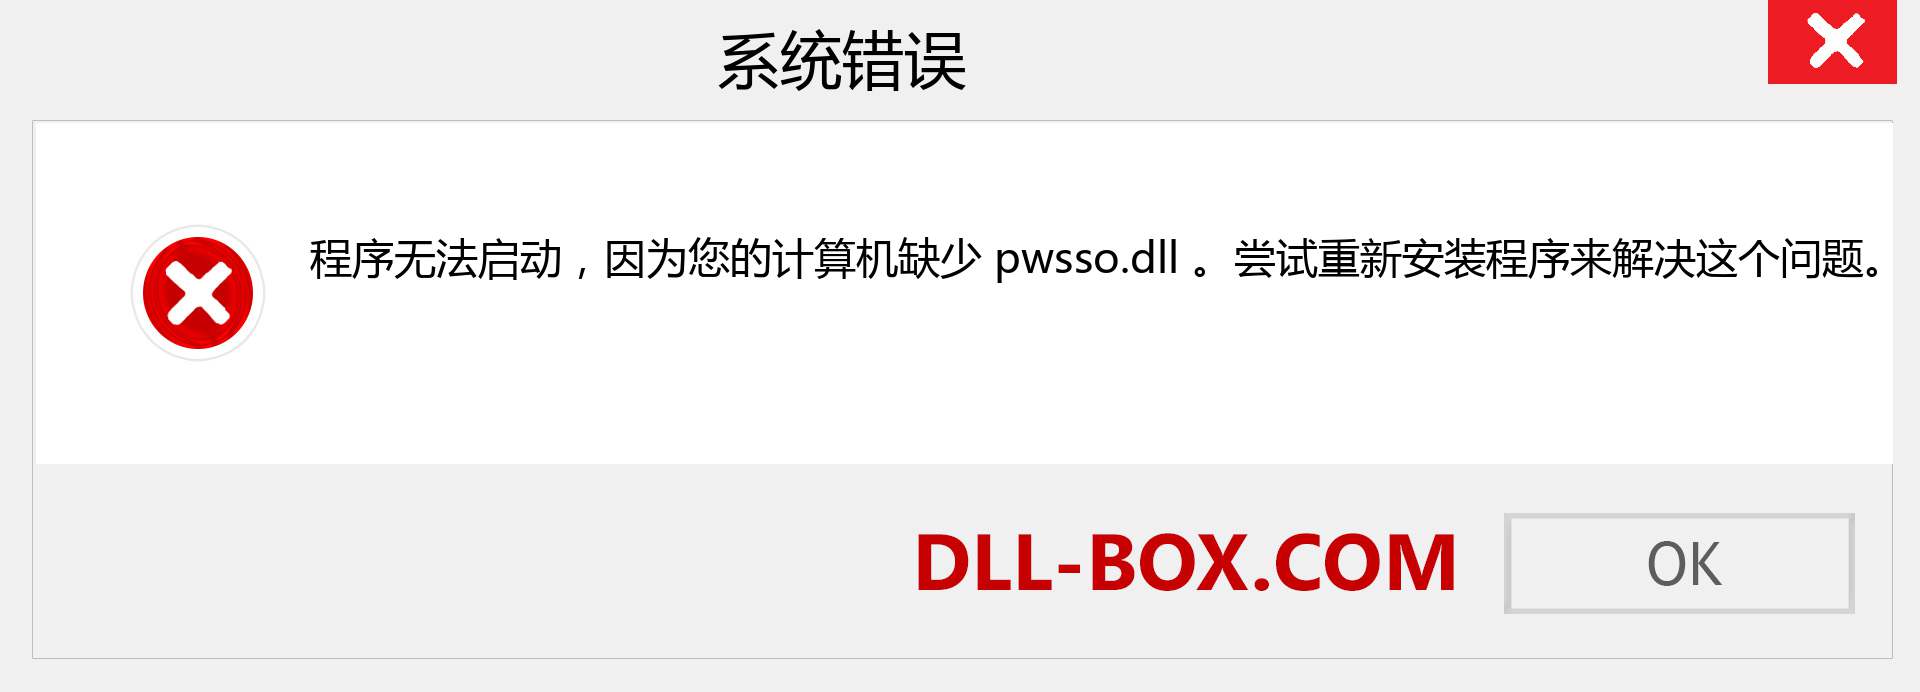 pwsso.dll 文件丢失？。 适用于 Windows 7、8、10 的下载 - 修复 Windows、照片、图像上的 pwsso dll 丢失错误